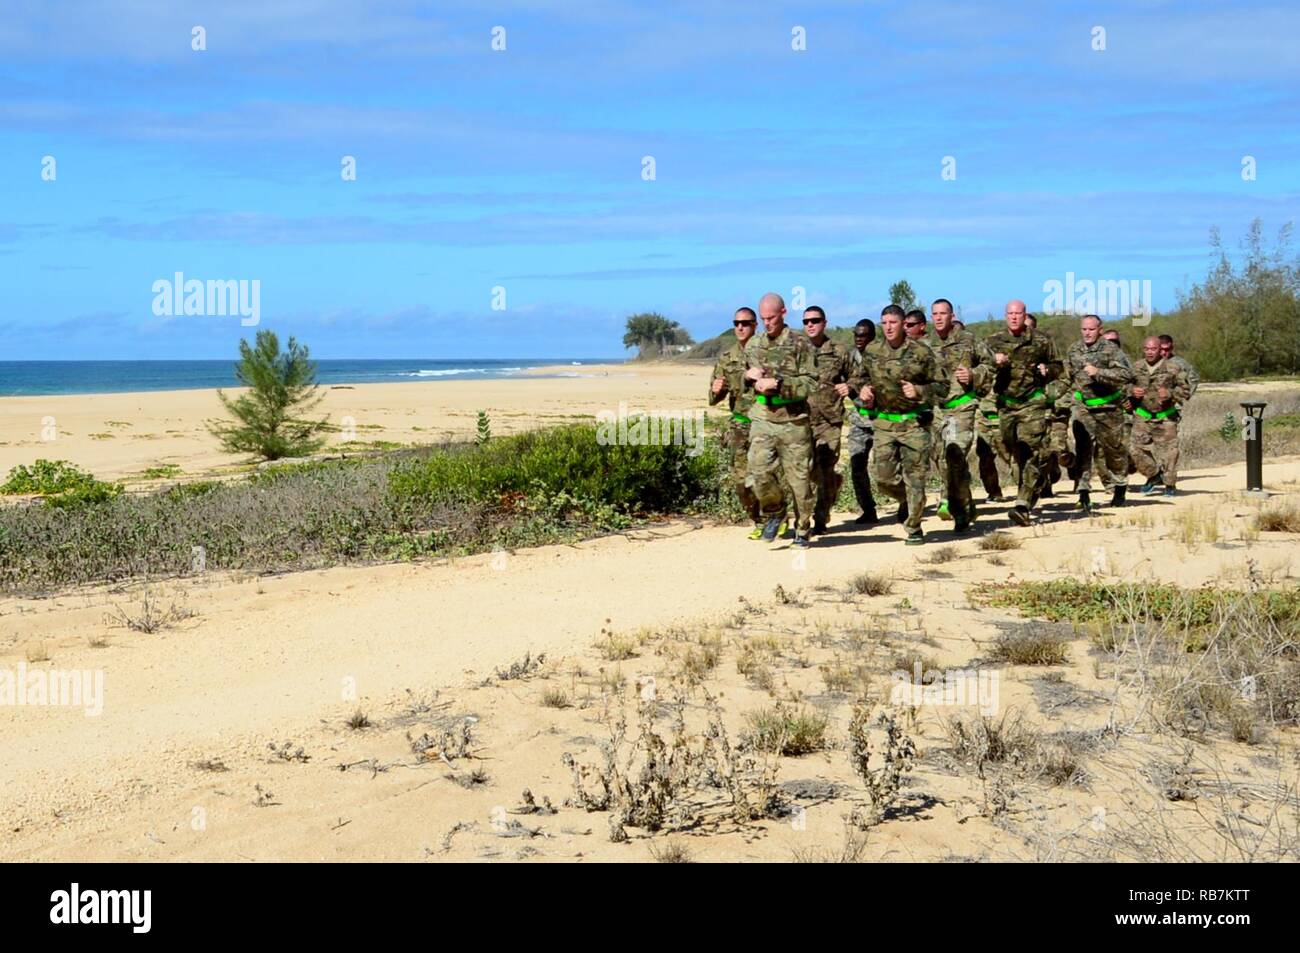 Hawaii Barking Sands, (6 décembre 2016) - 2e Brigade d'infanterie de l'Armée de terre, l'équipe de combat de la 25e Division d'Infanterie Brigade "guerrier" mènent leurs sous-officier supérieur et exercice d'entraînement physique à Pacific Missile Range Facility (PMRF) Hawaii Barking Sands, dans le cadre de leur activité de consolidation d'équipe. Banque D'Images